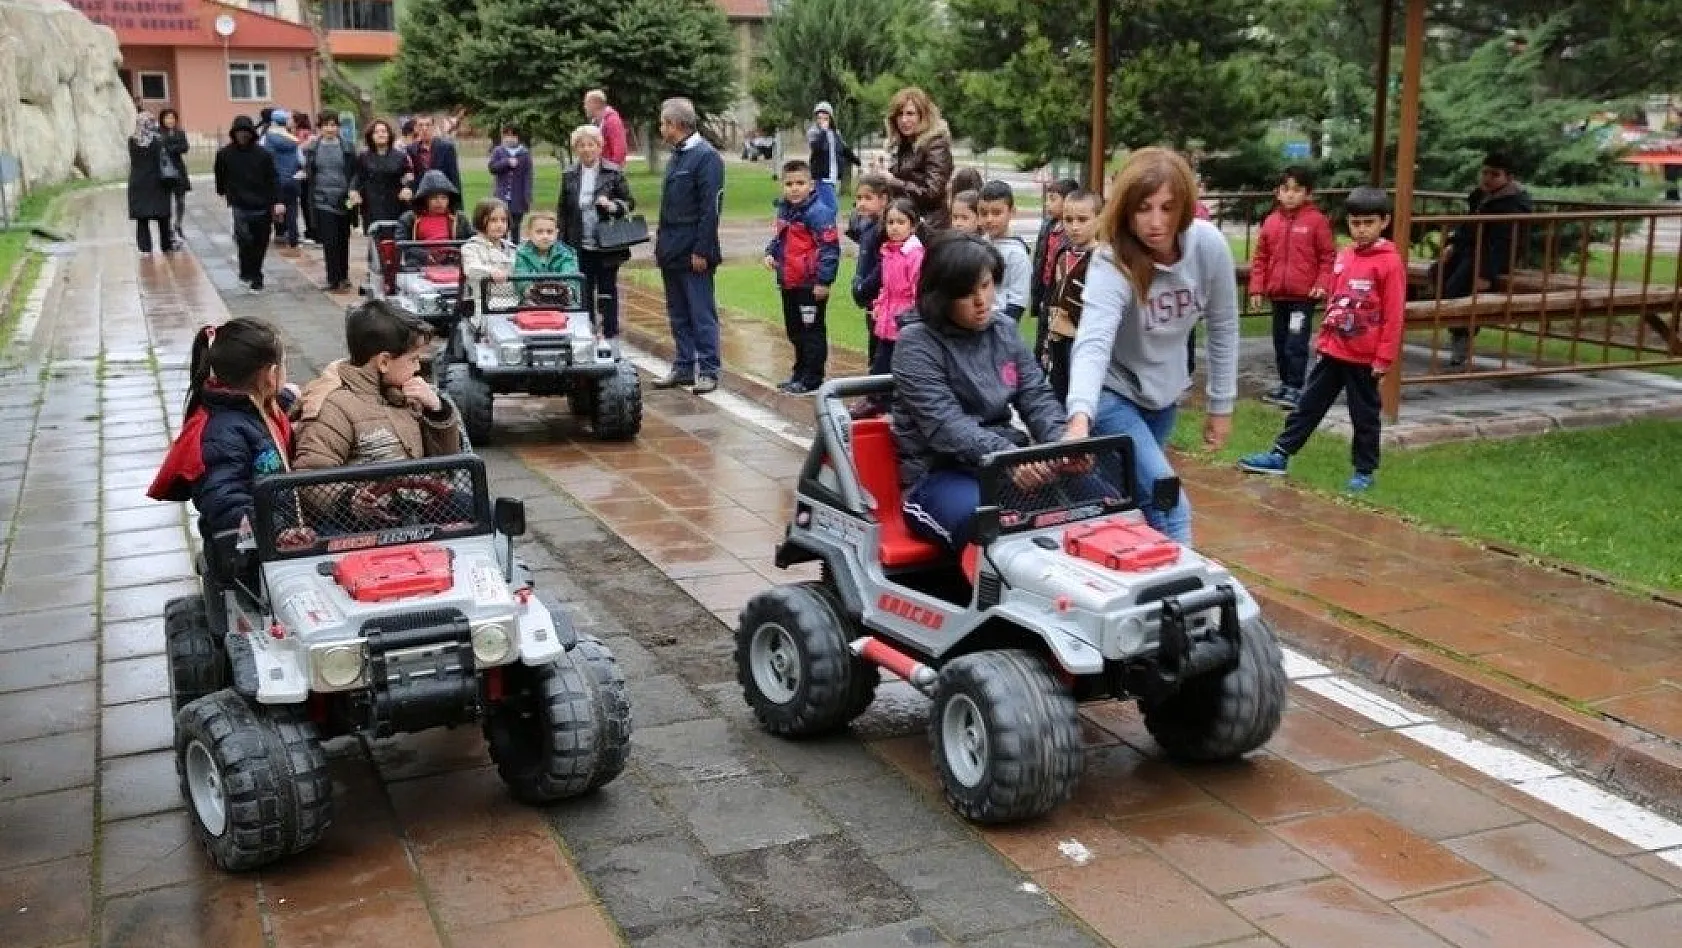 Melikgazi Trafik Eğitim Parkında çocuklara eğitim verildi